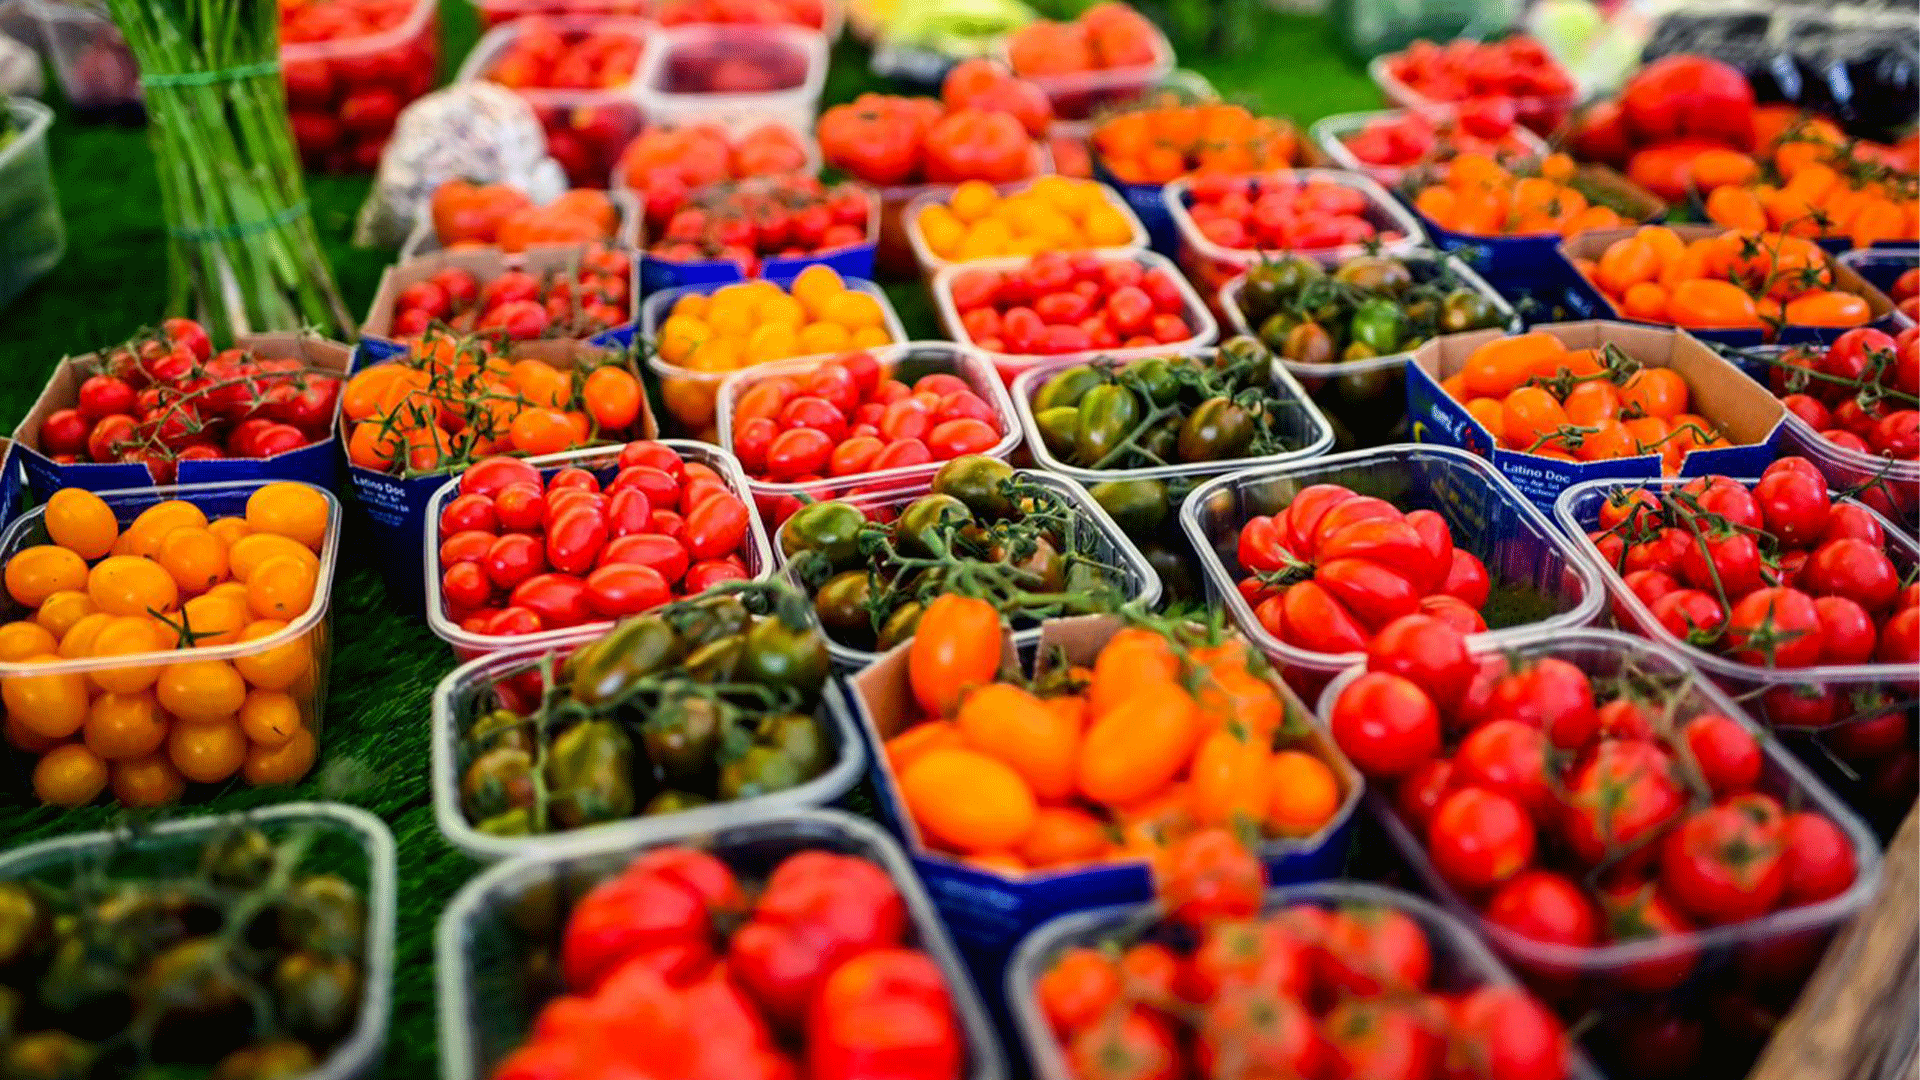 fruits-vegetables-markets-food-secret-tour